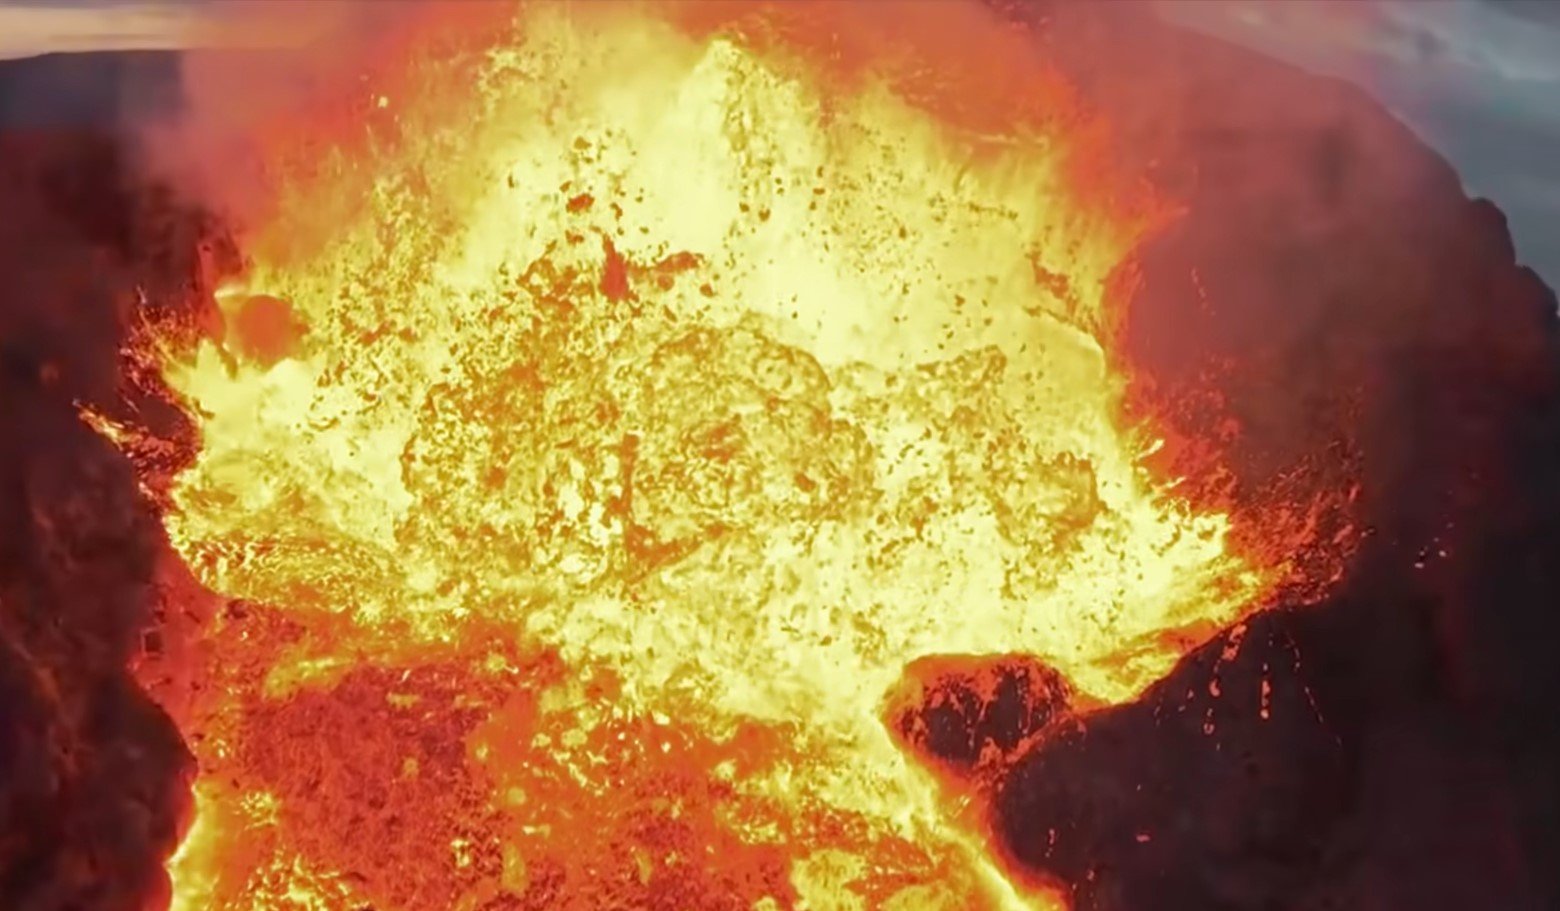  VIDEO: Imagini filmate cu drona din interiorul unui vulcan care erupe. Aparatul a fost înghiţit de lavă